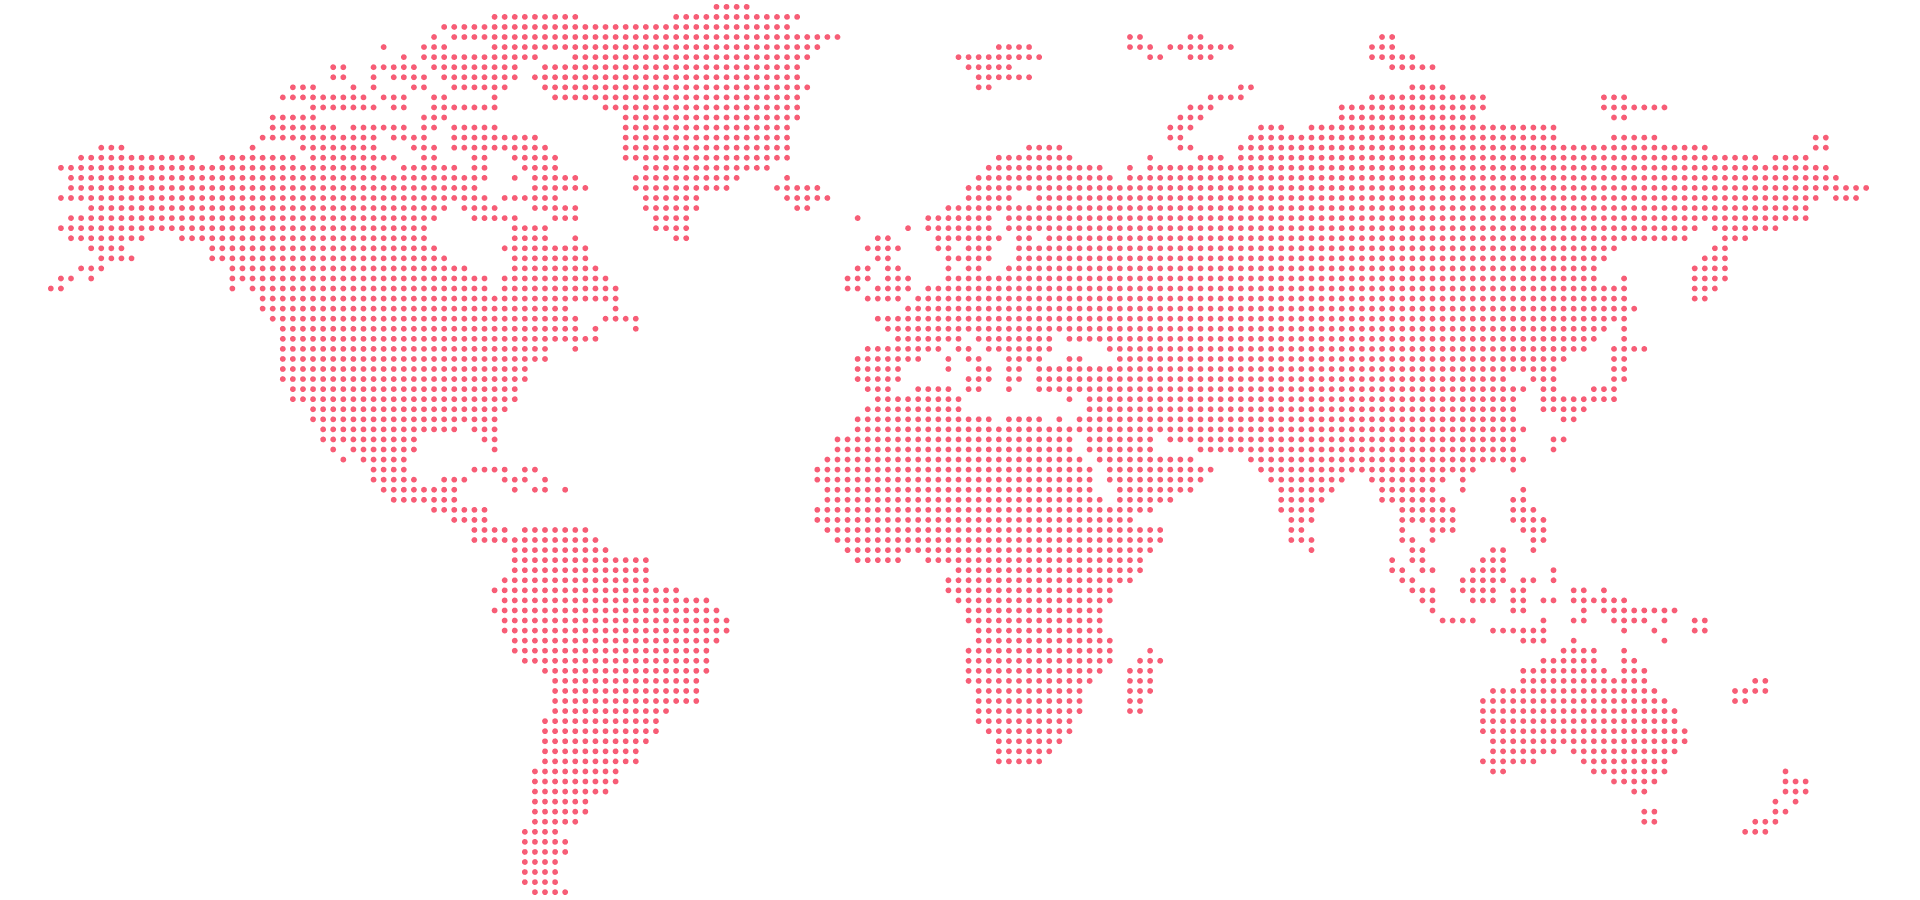 worldmap graphic